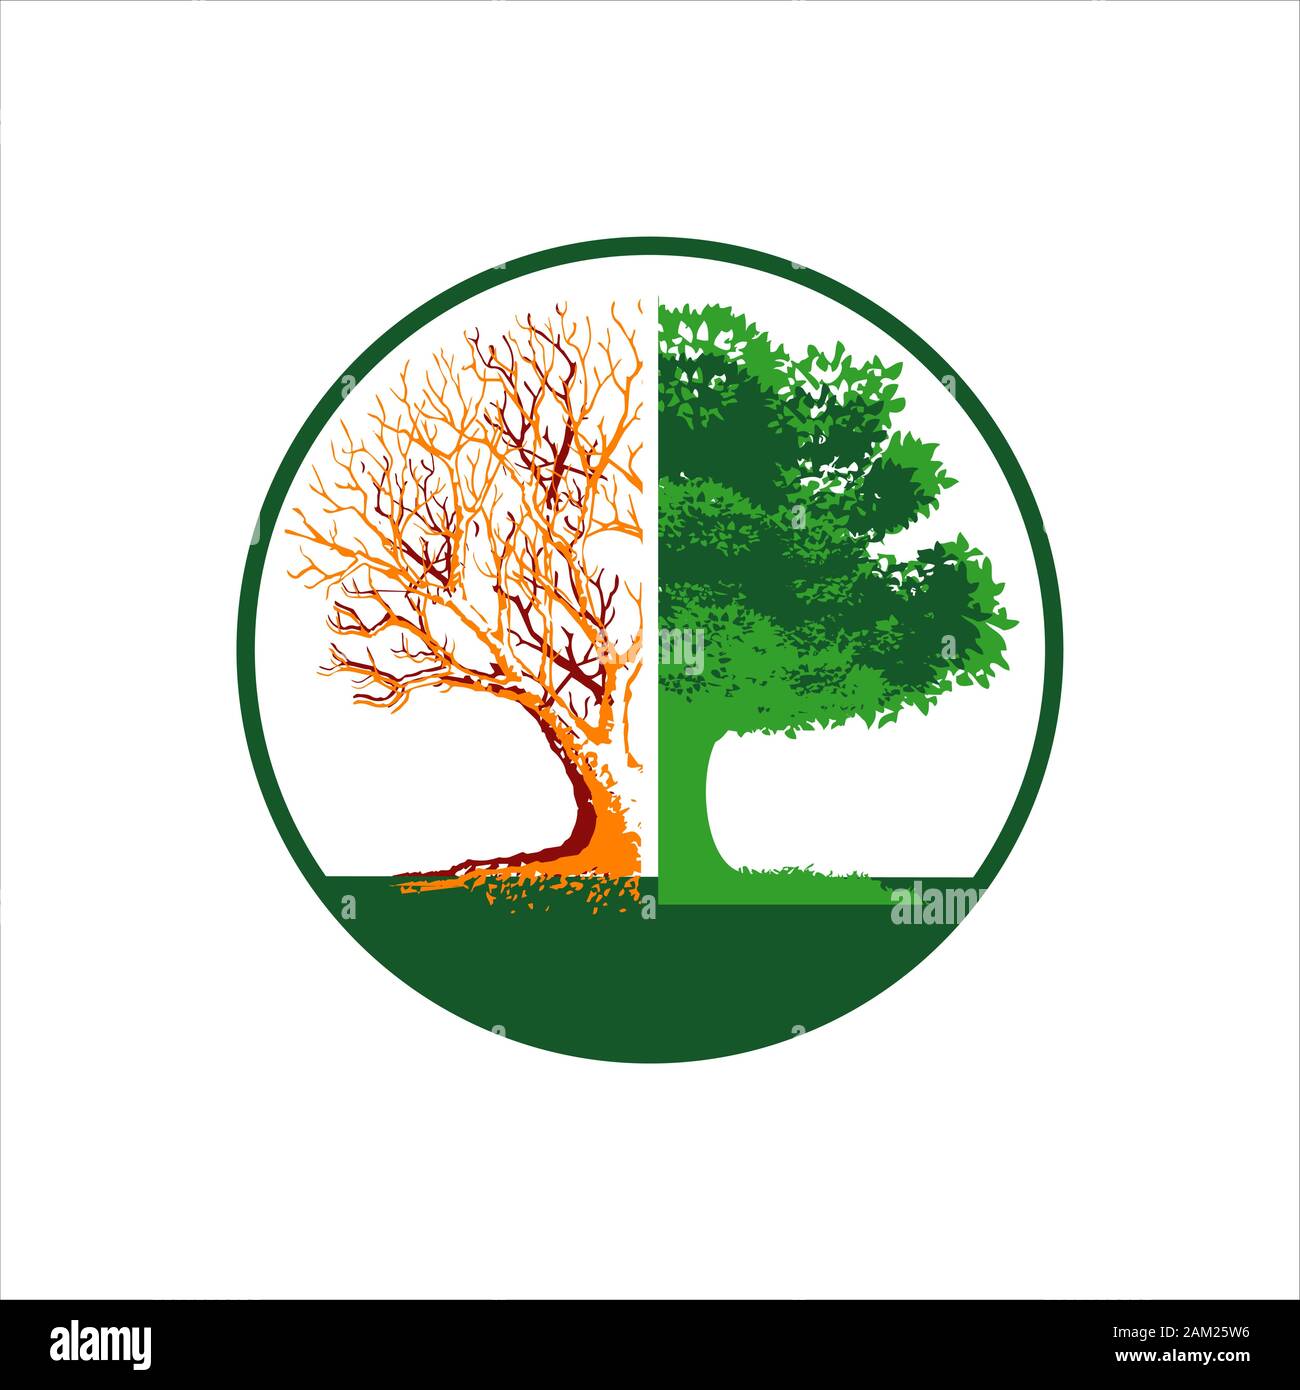 La conservazione delle foreste logo design vector silhoutte di albero rotto a fiorire le illustrazioni Illustrazione Vettoriale